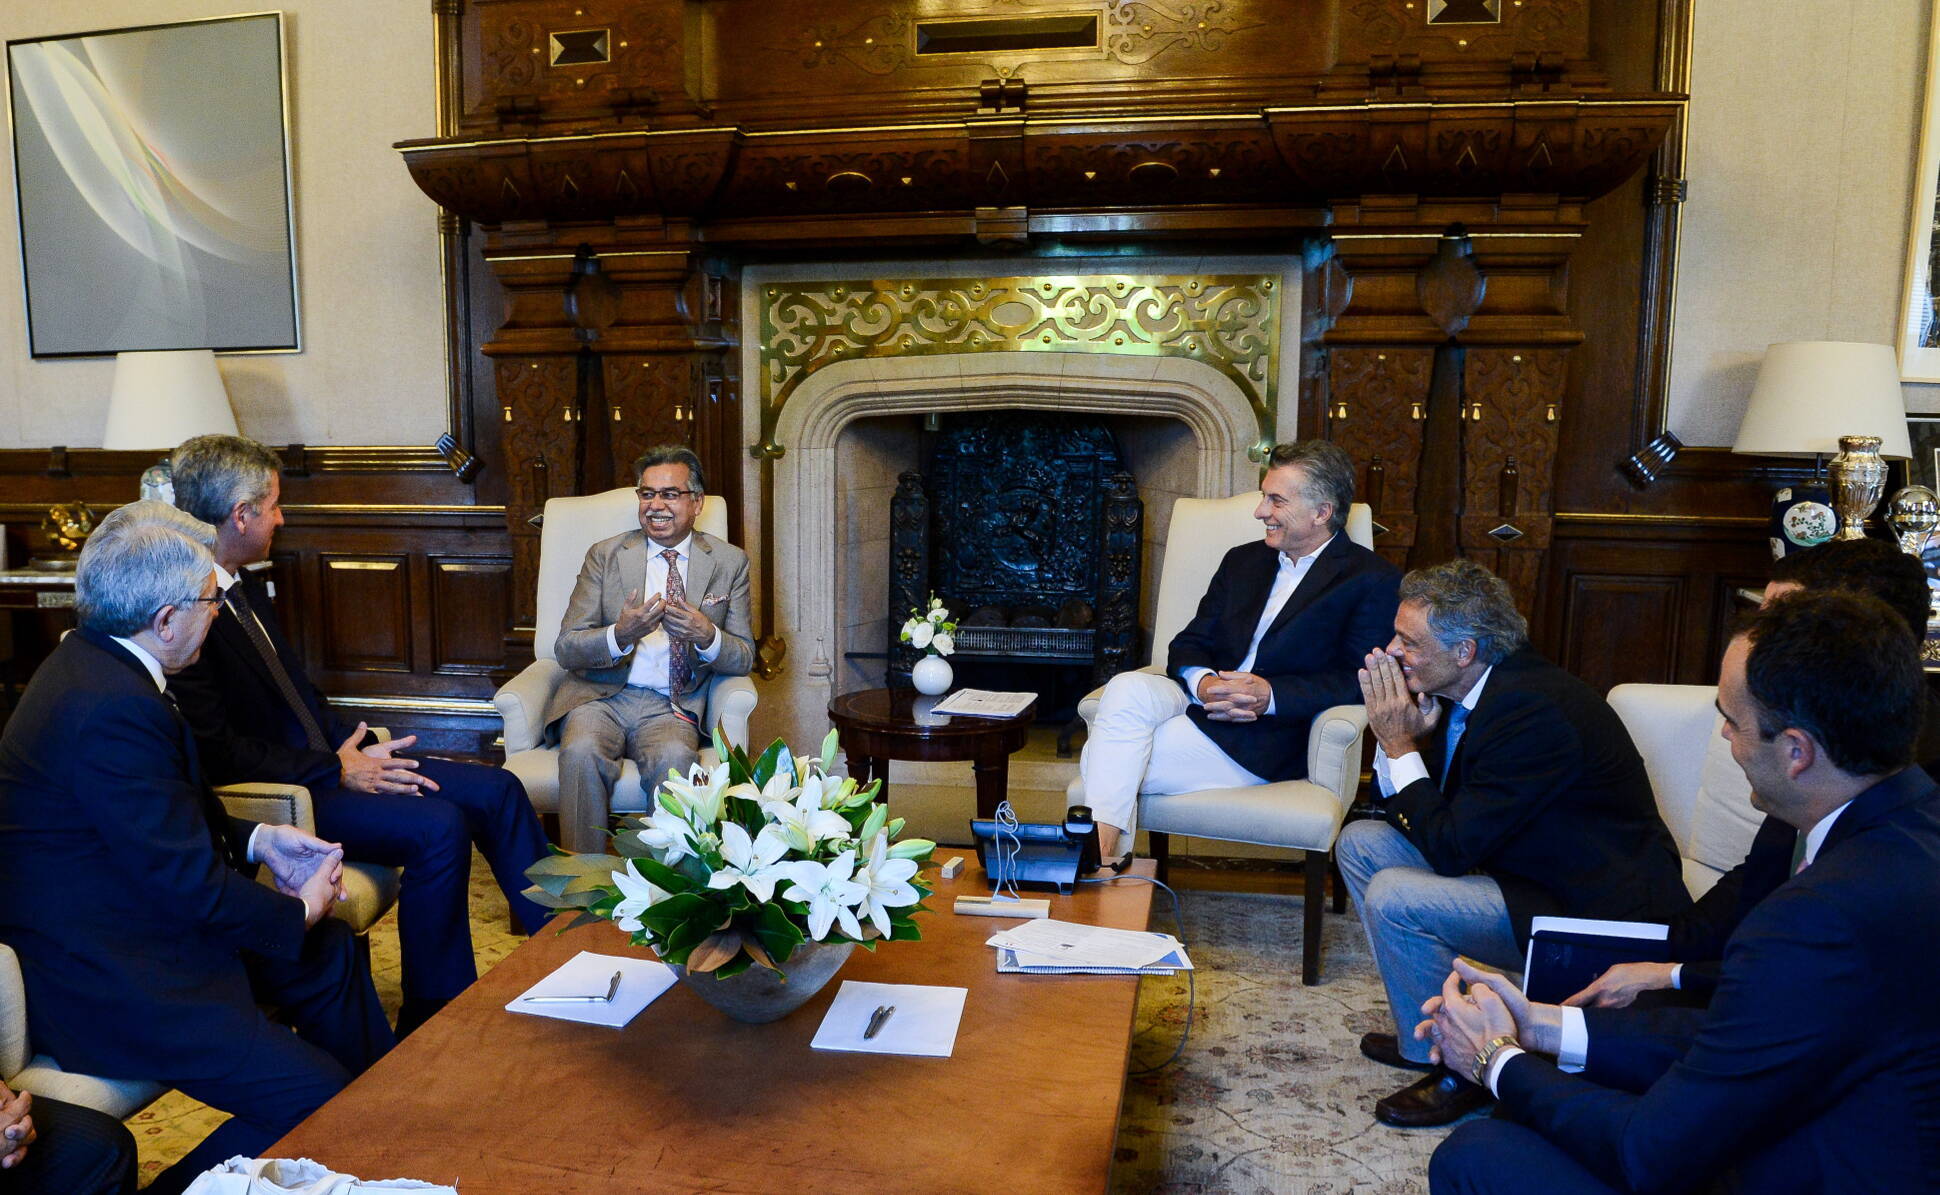 El presidente Macri recibió al director ejecutivo de Hero MotoCorp